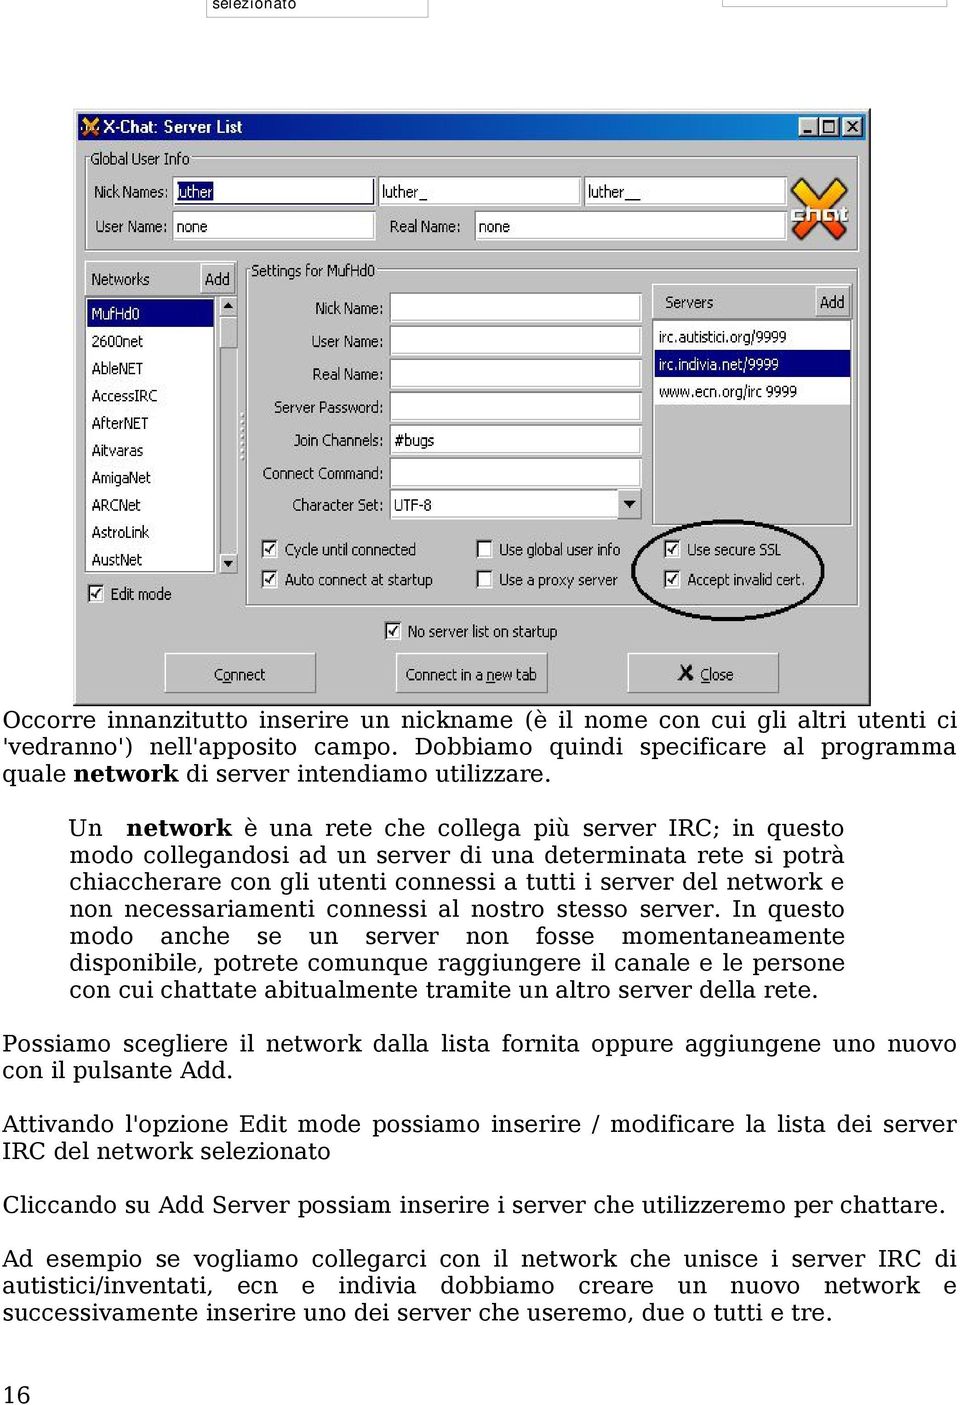 Un network è una rete che collega più server IRC; in questo modo collegandosi ad un server di una determinata rete si potrà chiaccherare con gli utenti connessi a tutti i server del network e non